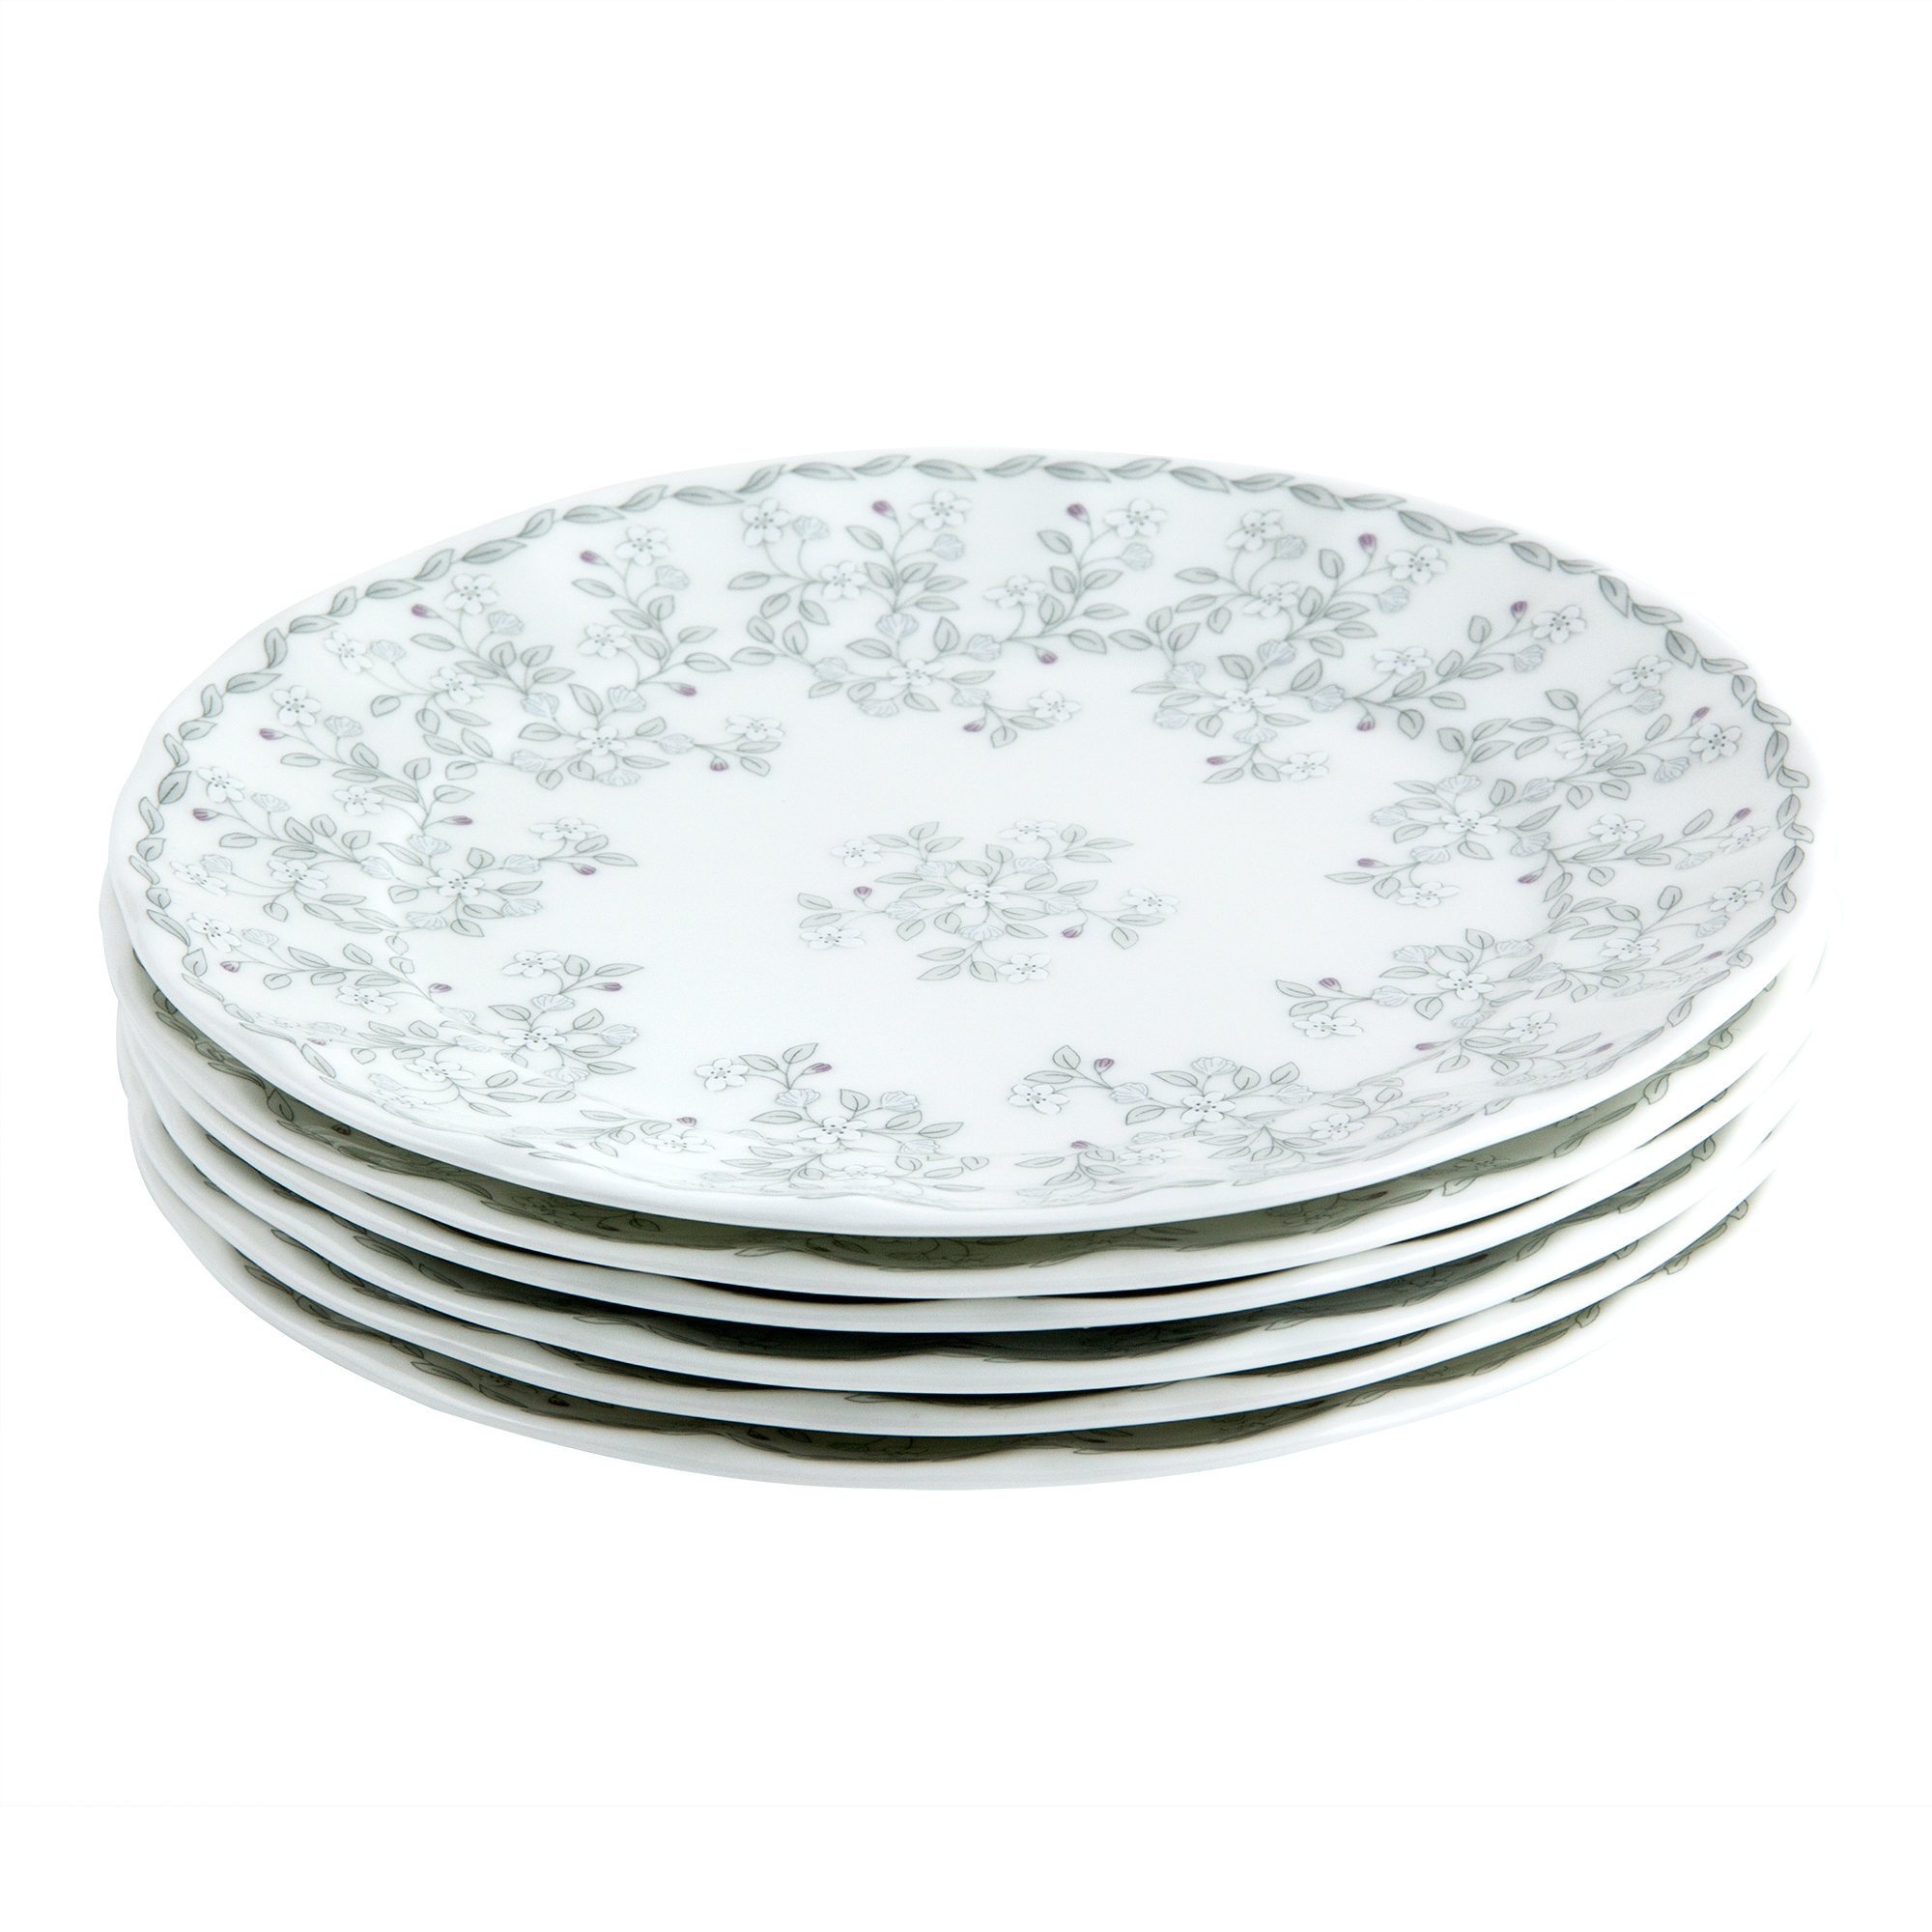 Набор тарелок Hatori Джулия Грэй 19 см 6 шт набор тарелок 19 см 6 шт leander мэри энн незабудка 028000